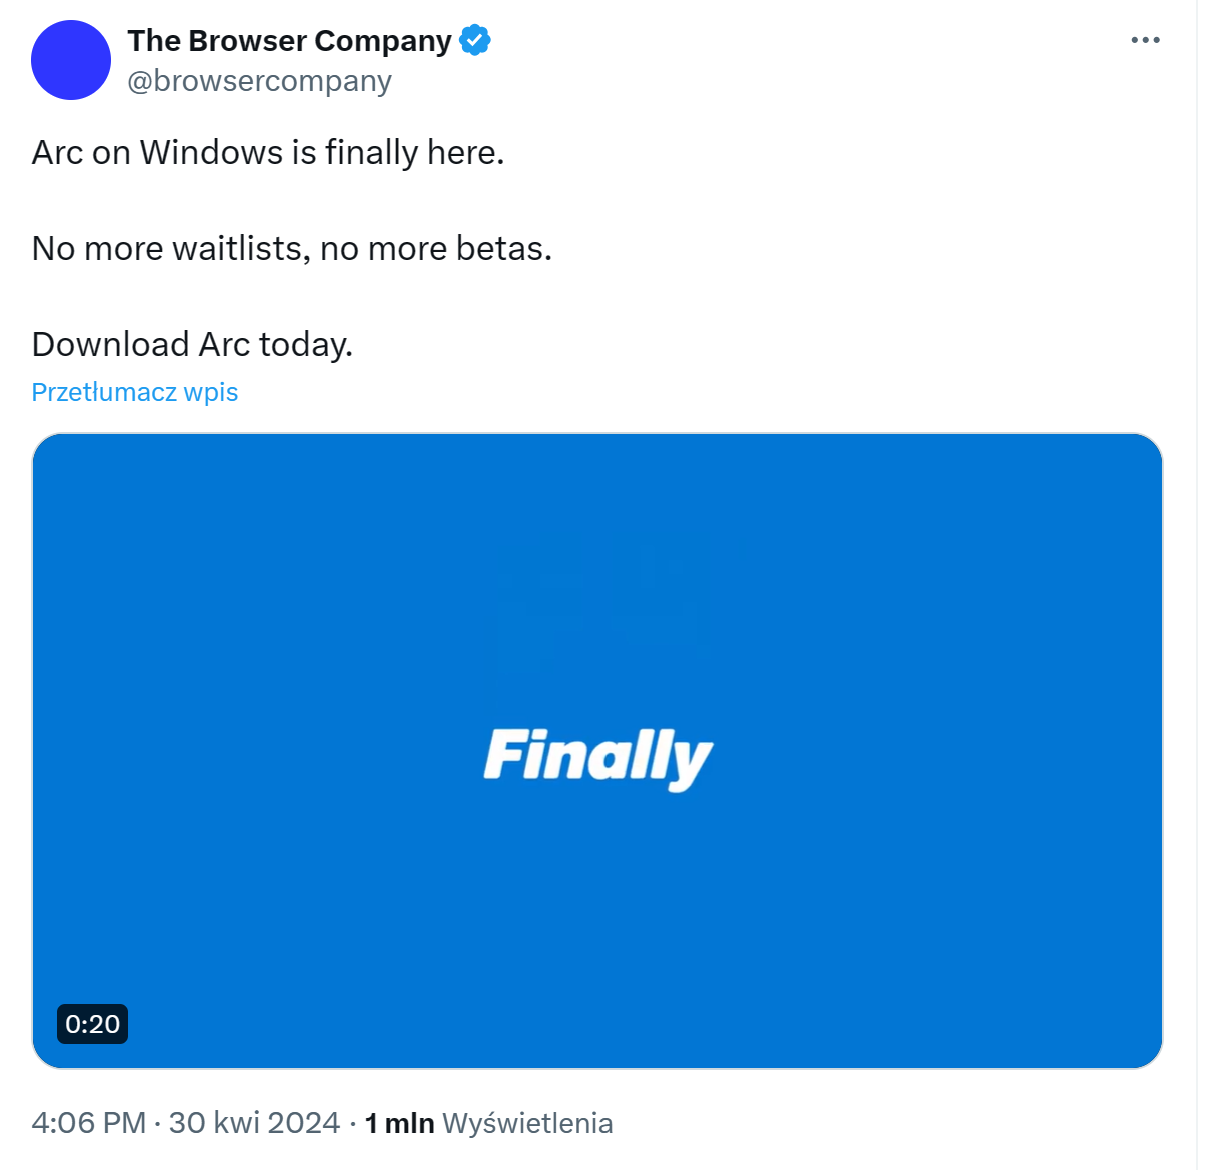 Uma captura de tela de uma postagem no Twitter da The Browser Company anunciando a disponibilidade do Arc Browser para Windows, com um gráfico que diz "Finalmente" em um fundo azul.